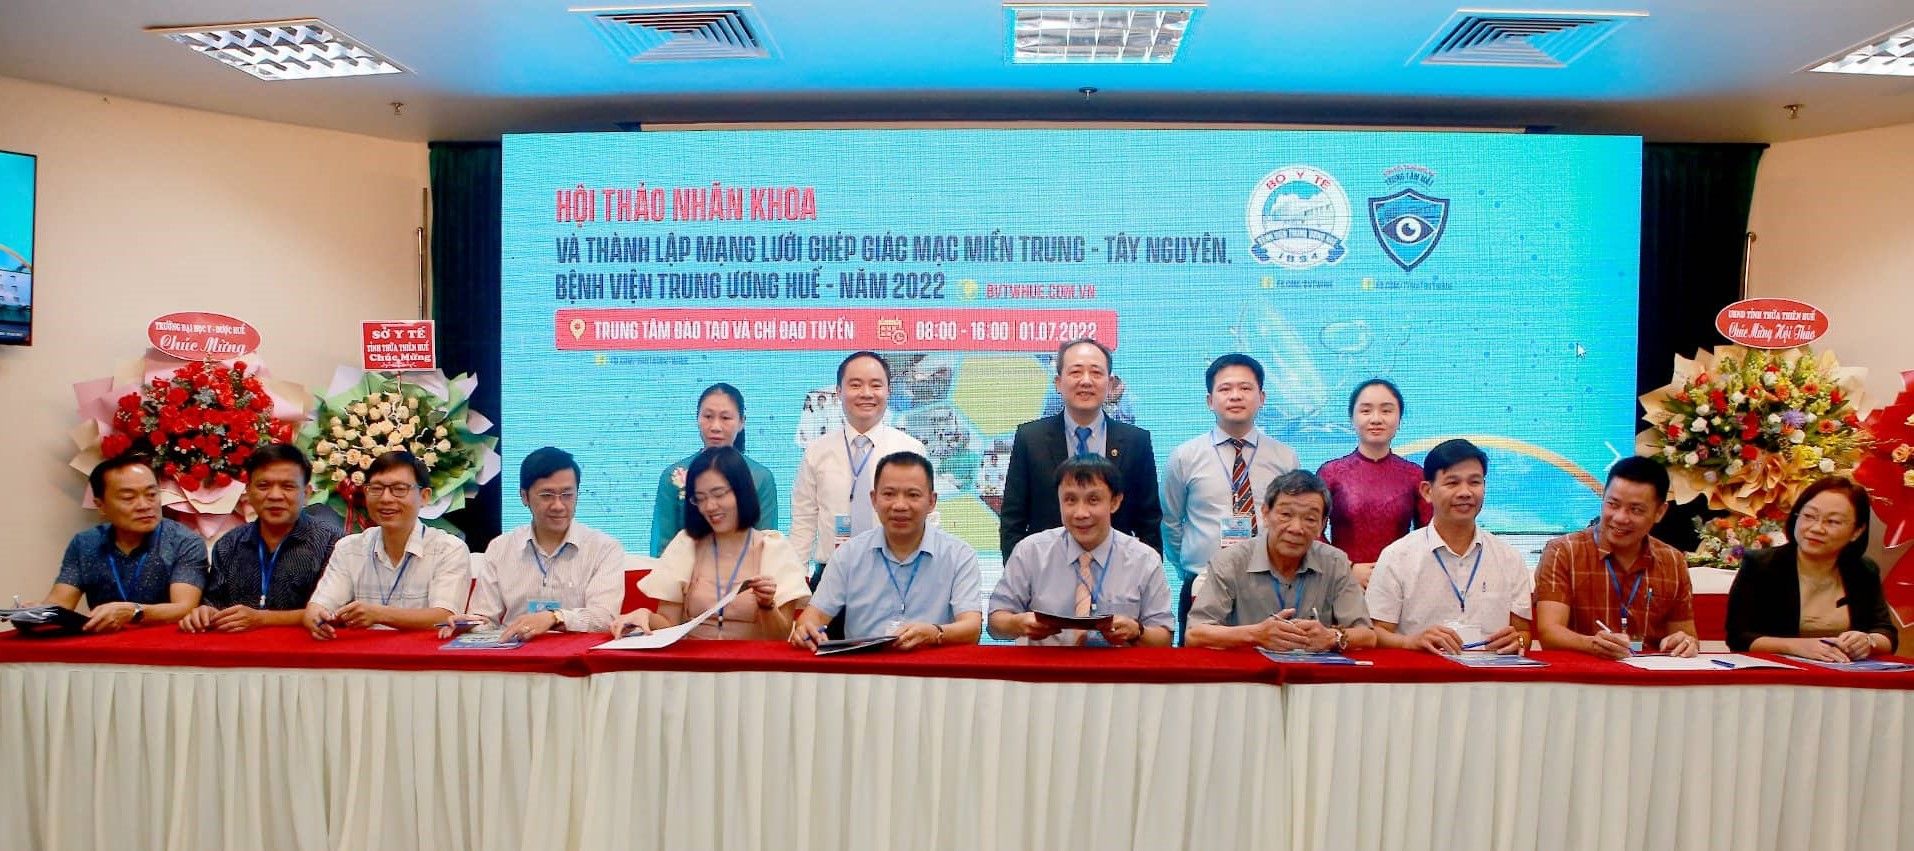 Thừa Thiên Huế: Hội thảo nhãn khoa và thành lập mạng lưới ghép giác mạc miền Trung – Tây nguyên